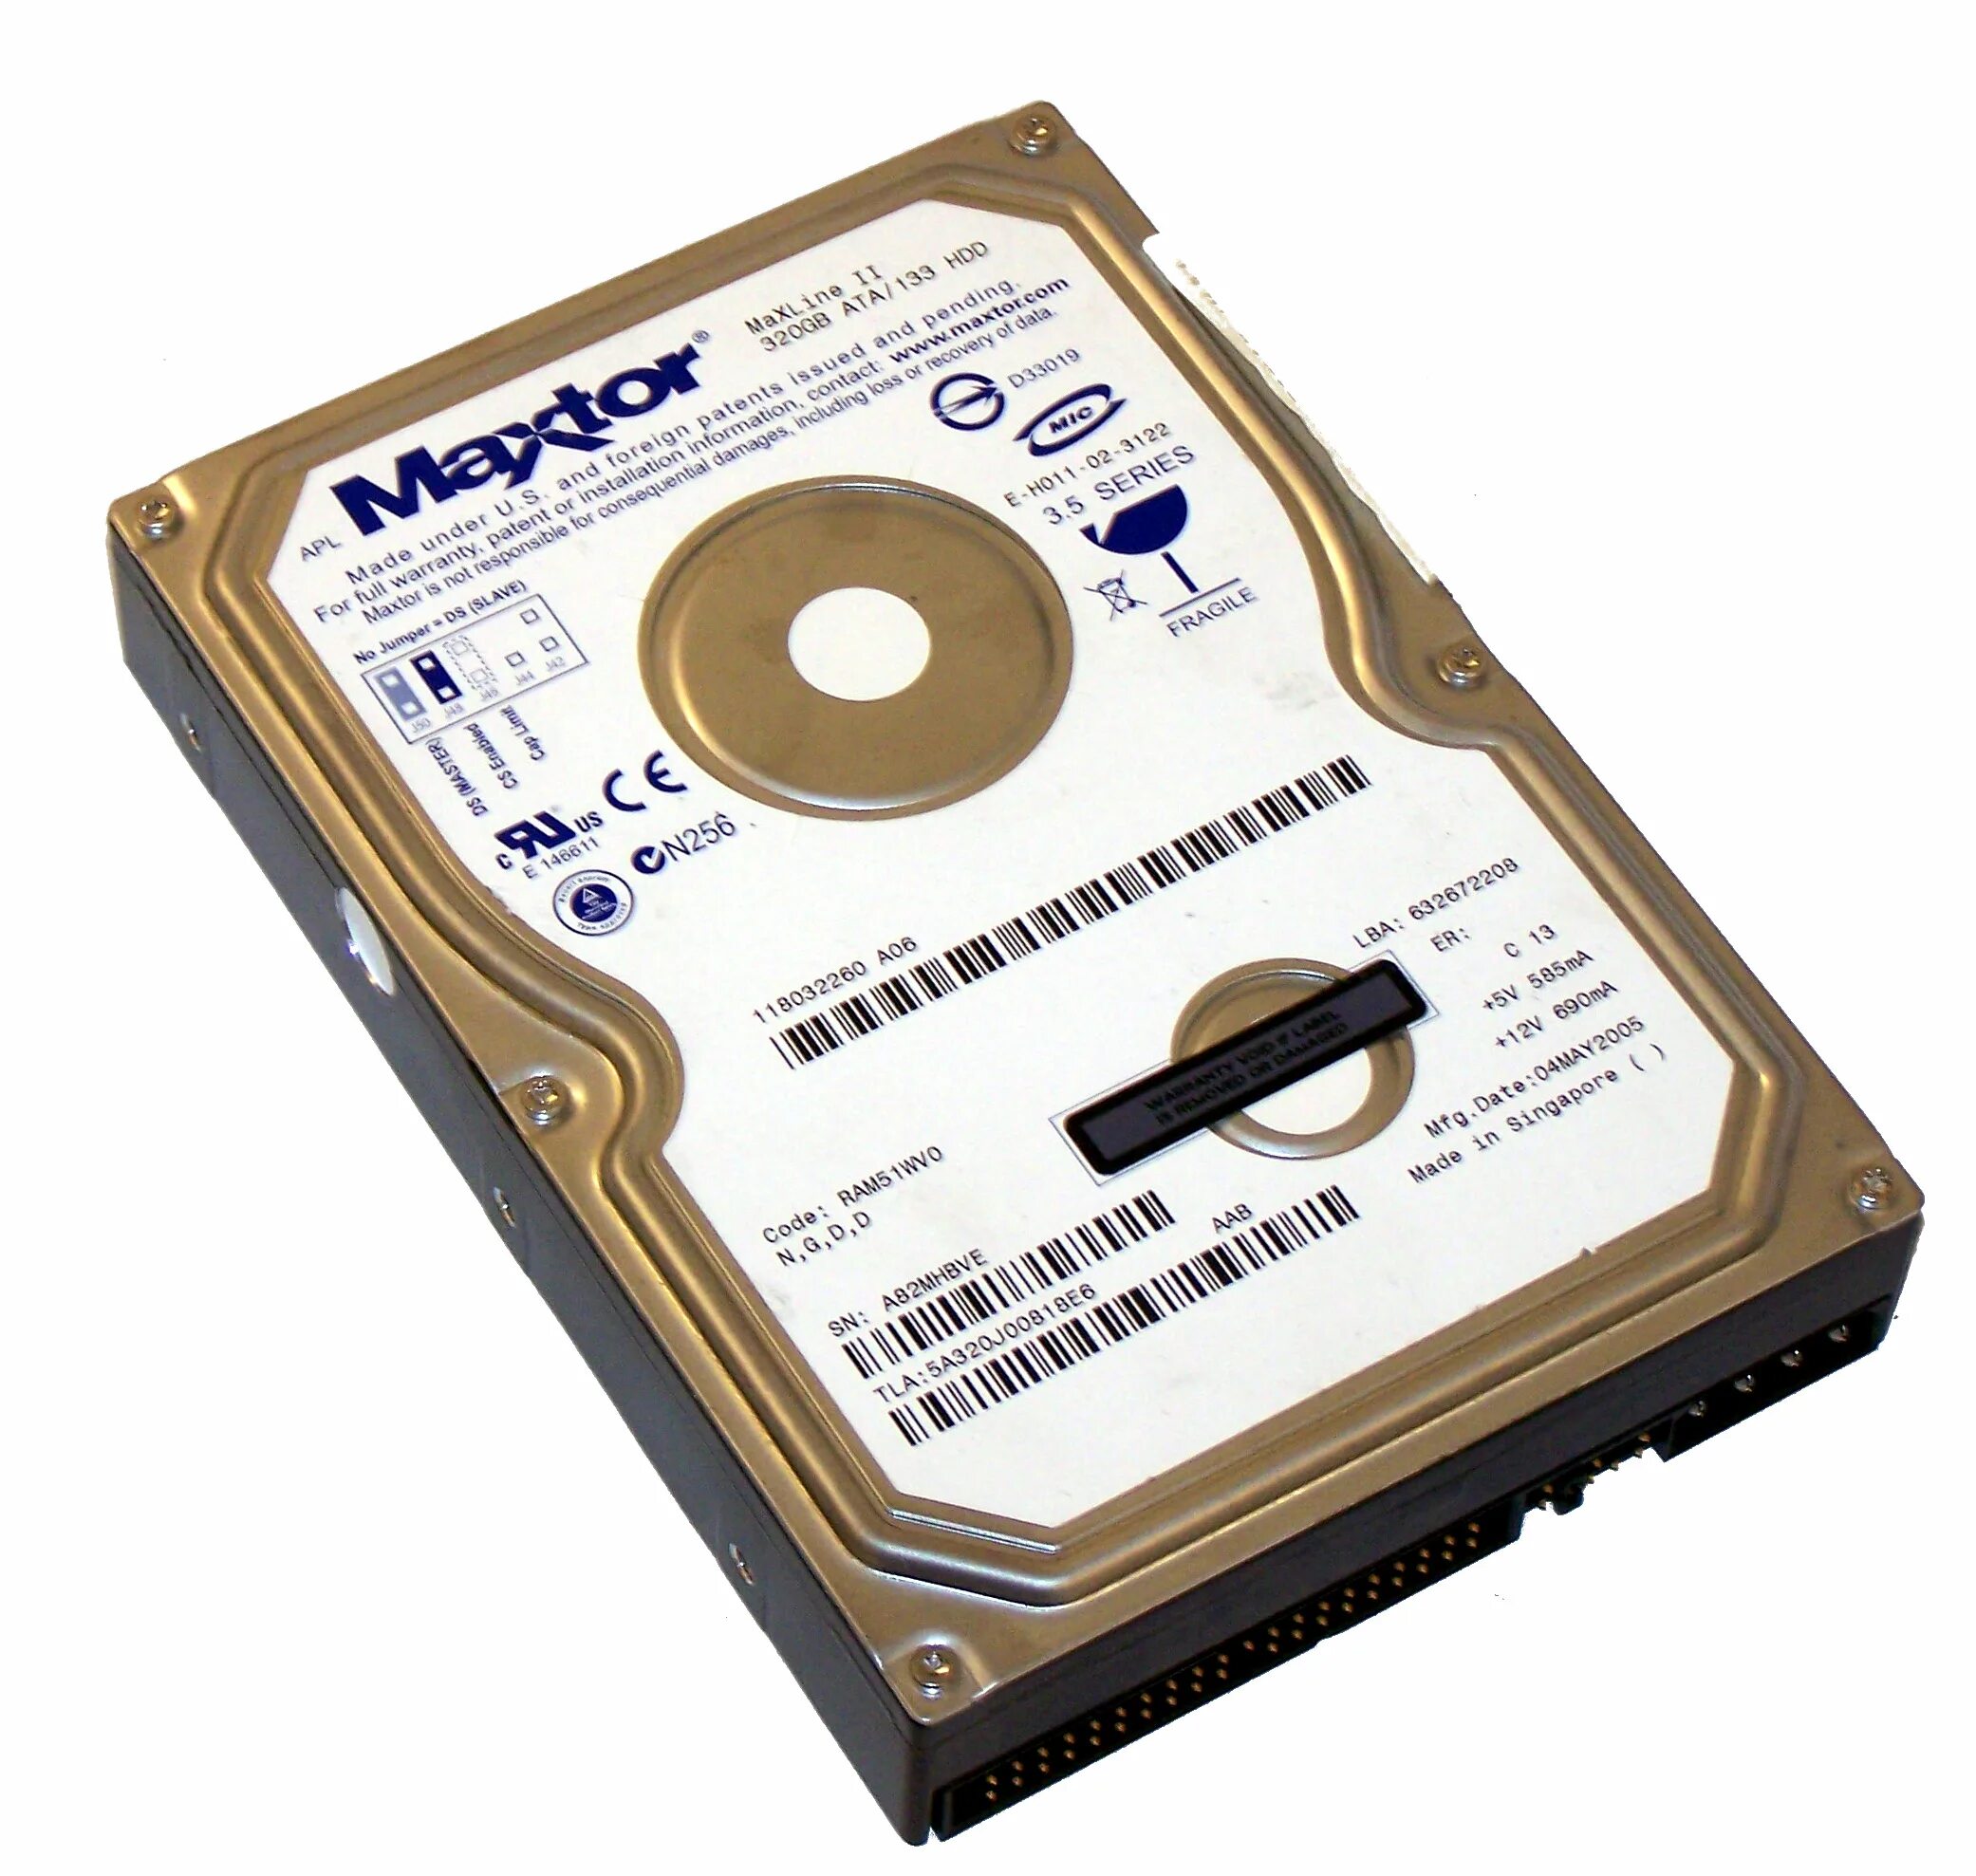 Ram 51. Жёсткий диск Maxtor 40 ГБ 3.5 Series. Maxtor 320 GB. Внешний жесткий диск Maxtor. Maxtor HDD logo.